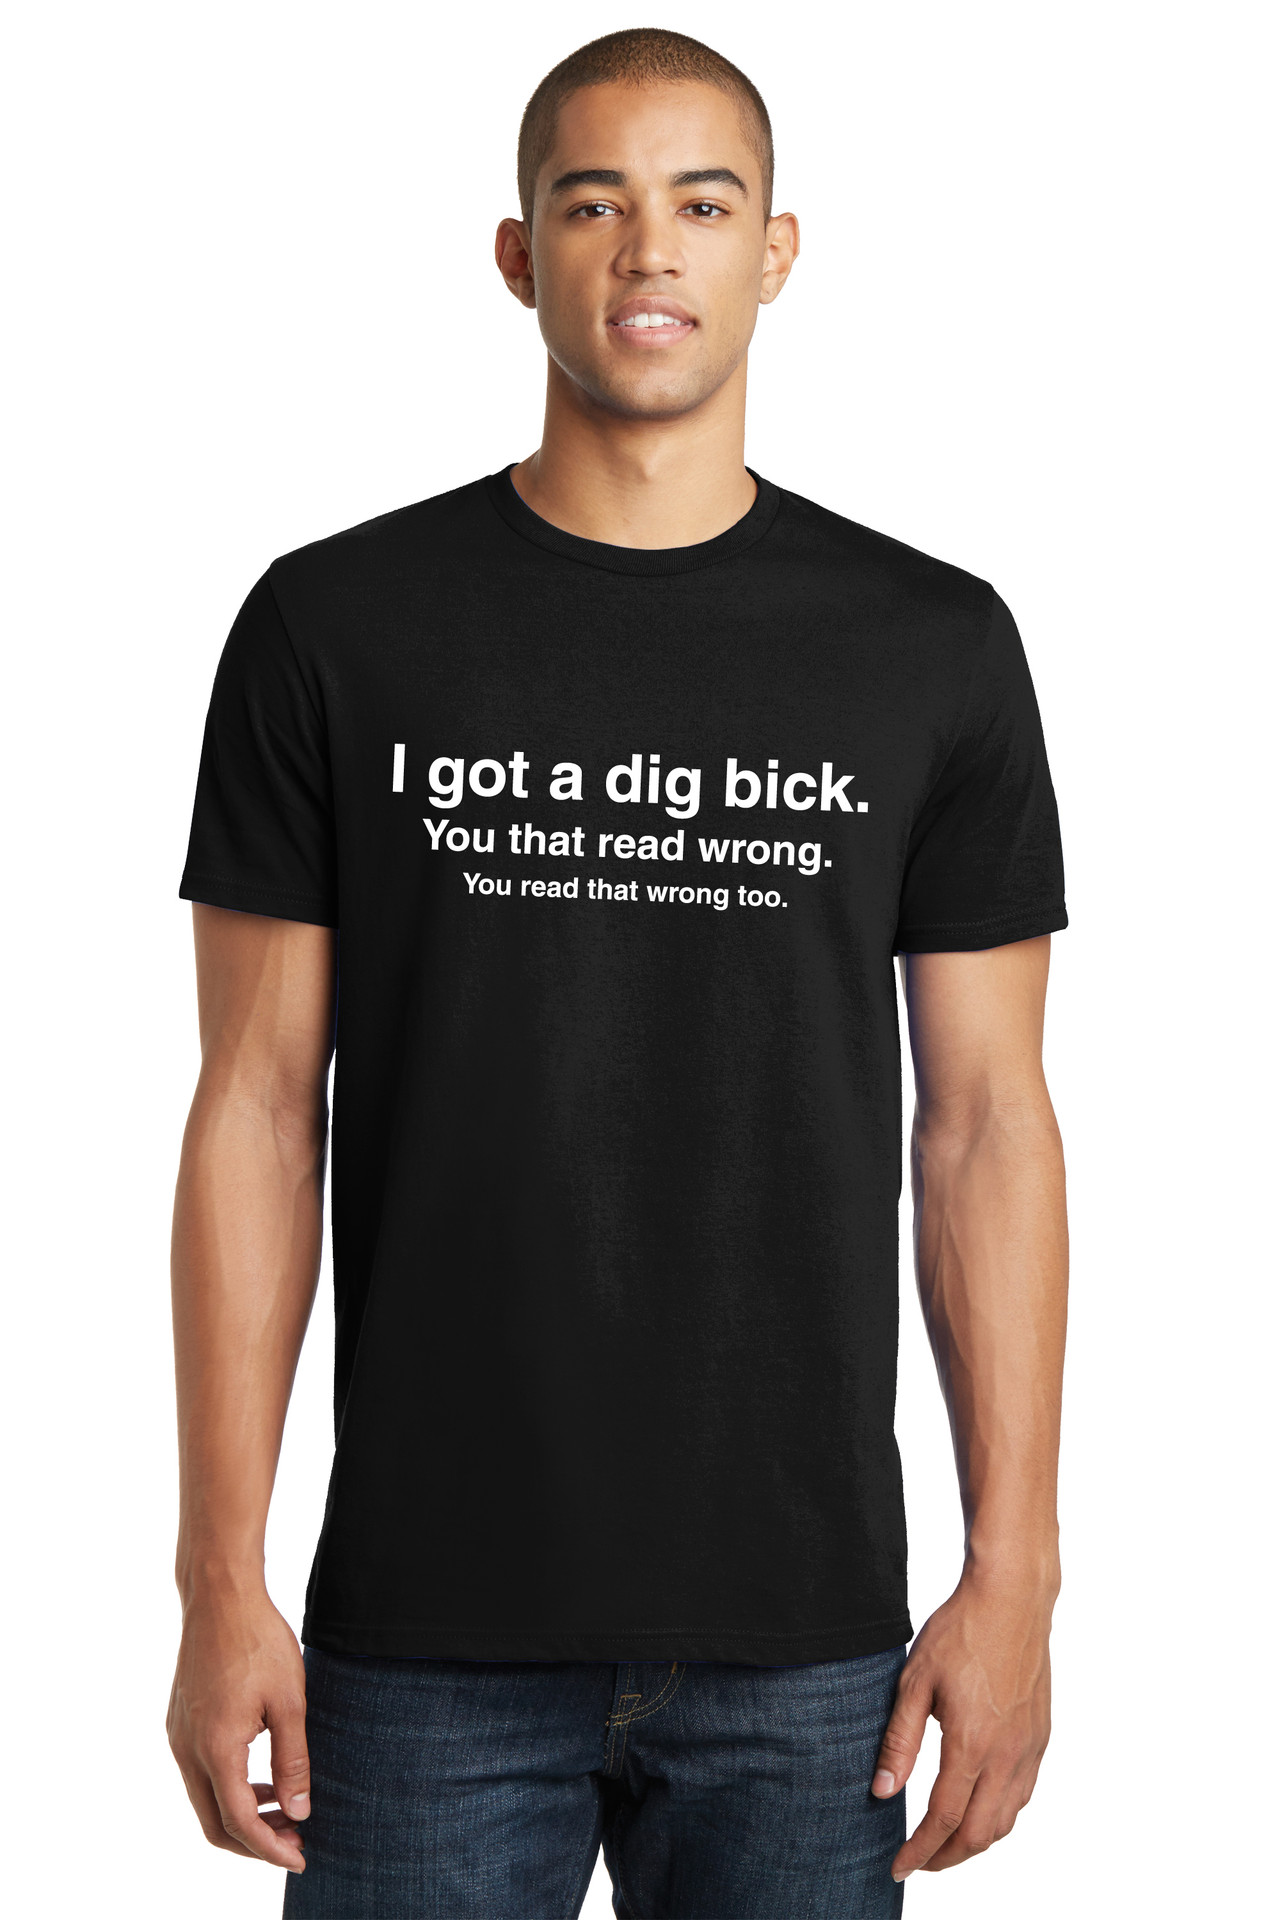 I Got a Dig Bick (Big Dick) T-Shirt - Funny ADULT Rude Humor Offensive ...